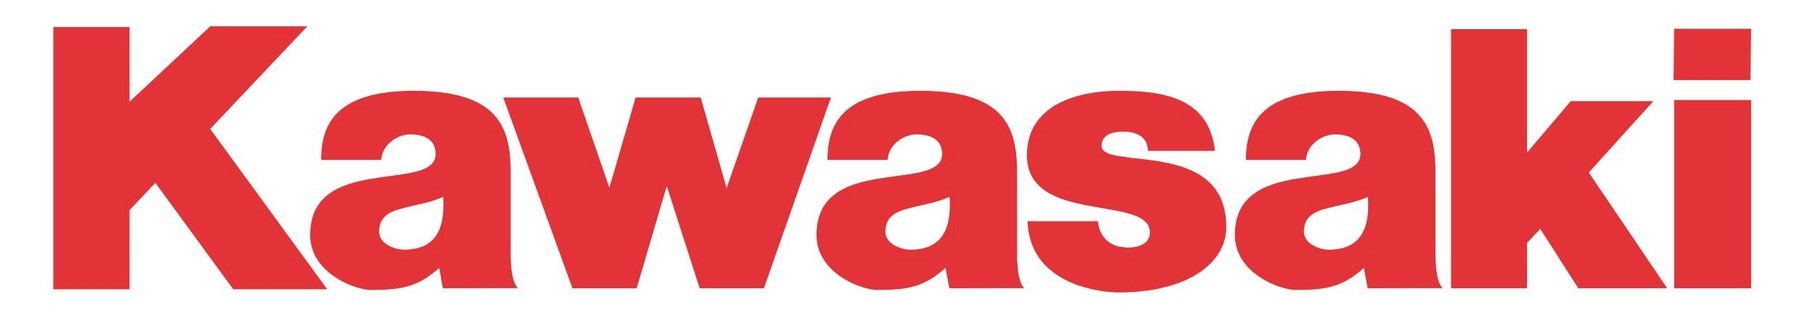 kawasaki logo eps